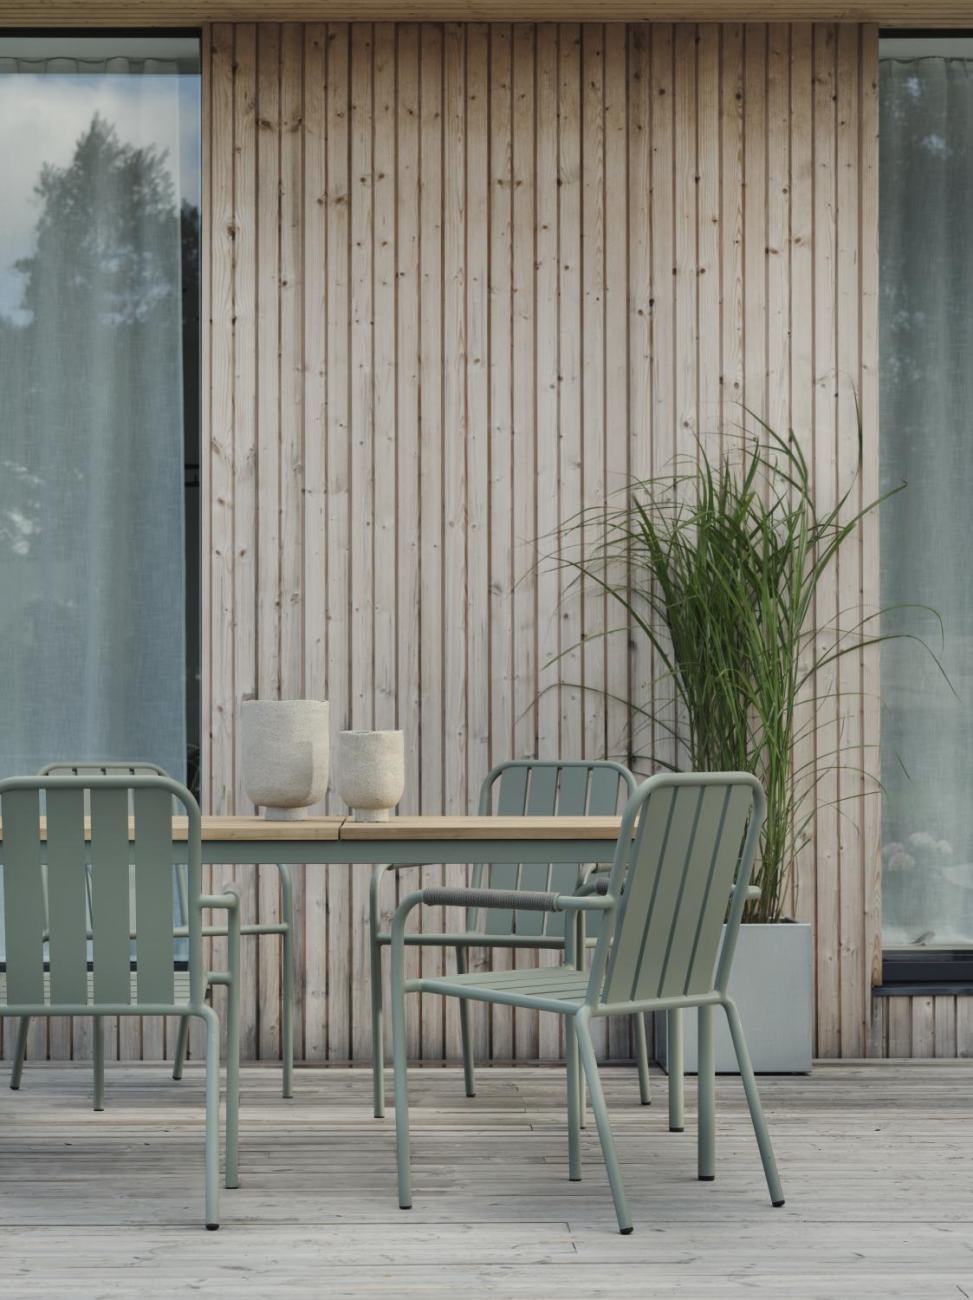 Der Gartenesstisch Nolli überzeugt mit seinem modernen Design. Gefertigt wurde die Tischplatte aus Teakholz und hat einen natürlichen Farbton. Das Gestell ist auch aus Metall und hat eine grüne Farbe. Der Tisch besitzt eine Länge von 240 cm.